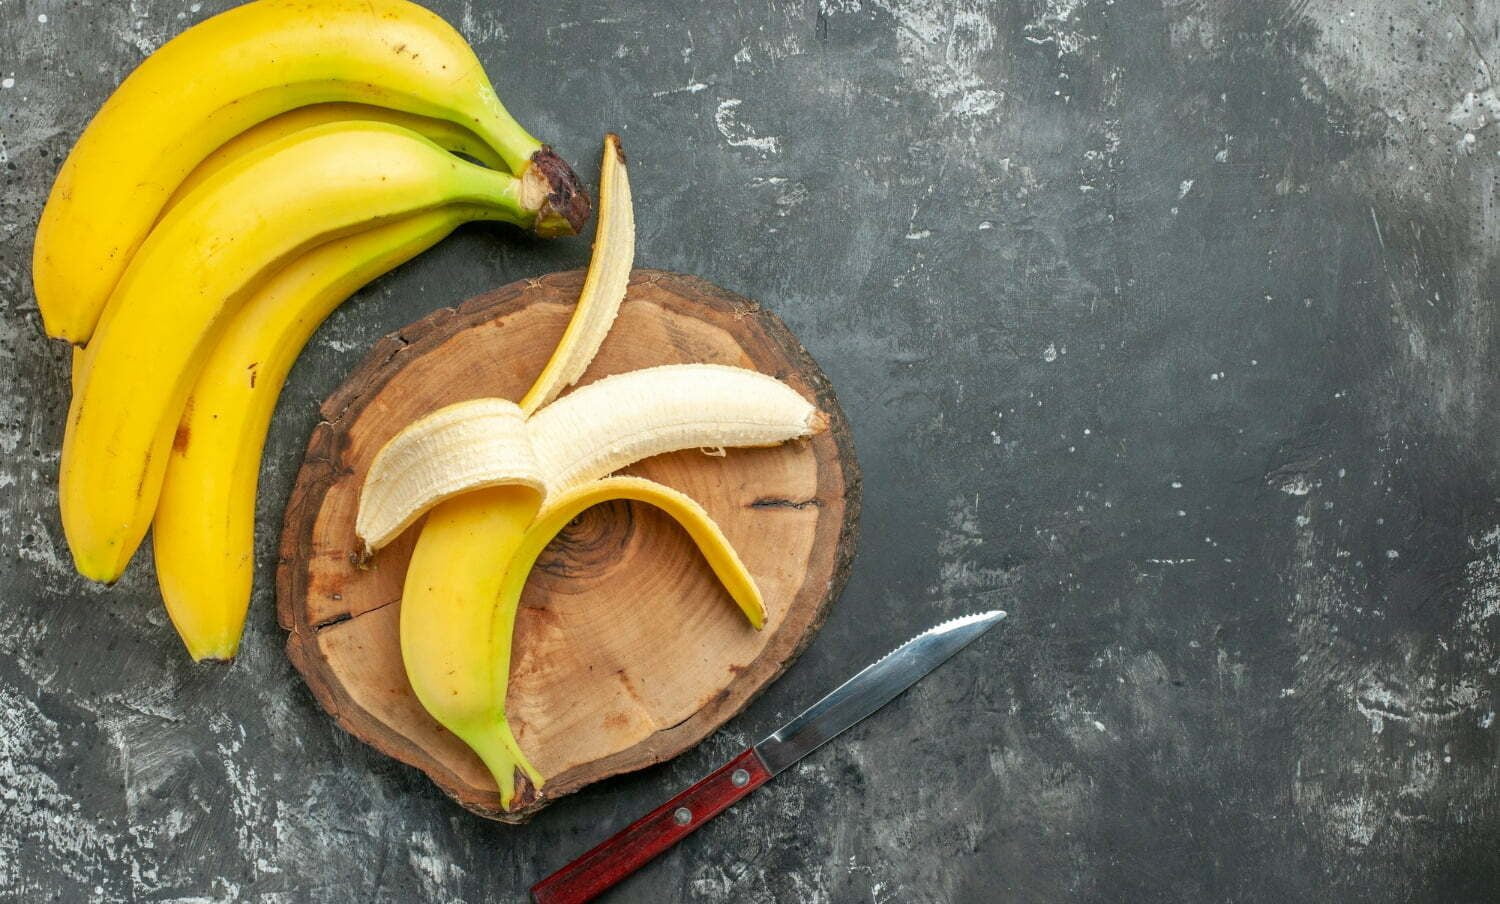 hilos del banano